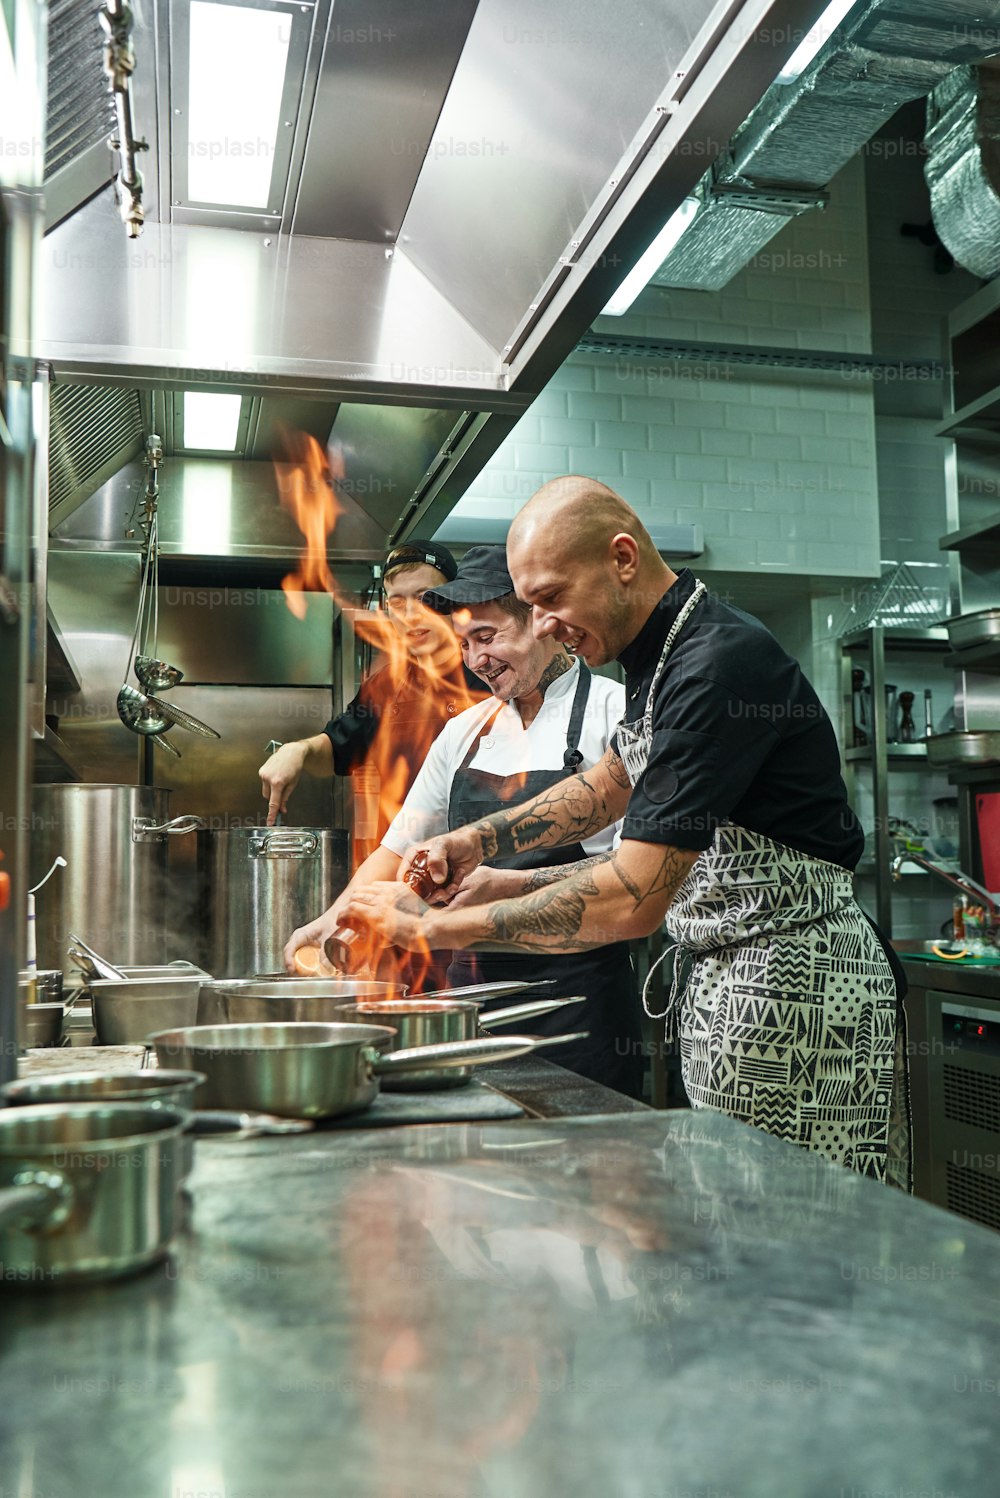 Sehr heiß Fröhlicher Koch und zwei seiner Assistenten bereiten das Gericht auf dem Herd mit offenem Feuer in der Küche des Restaurants zu. Flambe. Kochkonzept